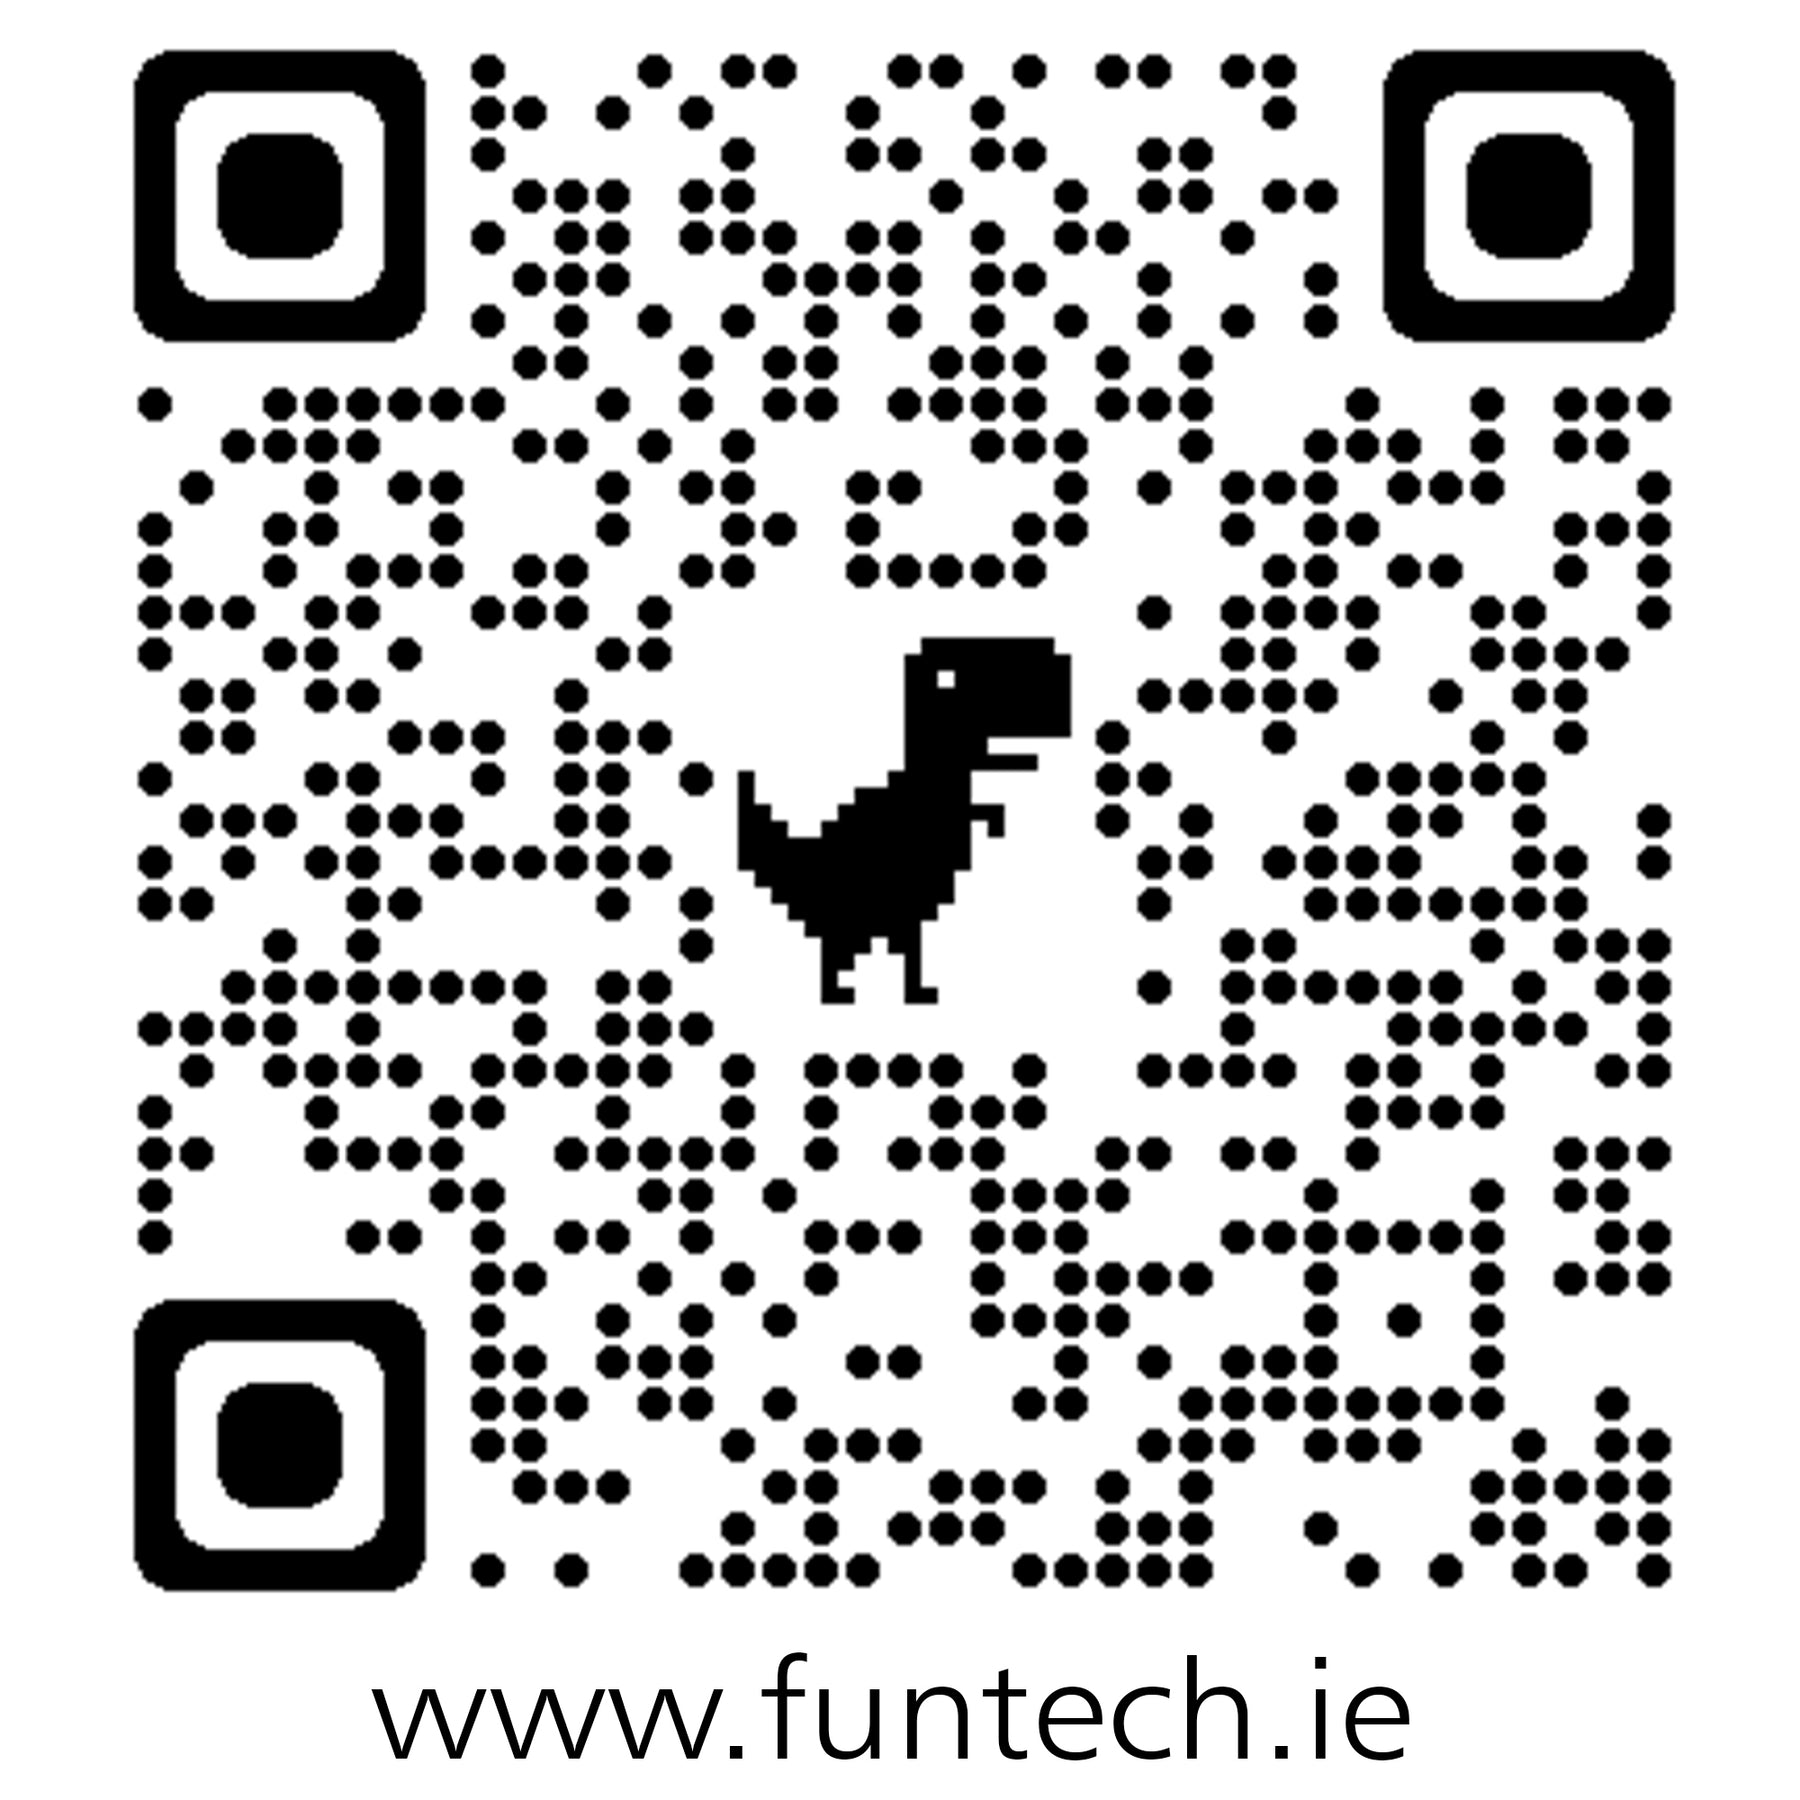 http://www.funtech.ie